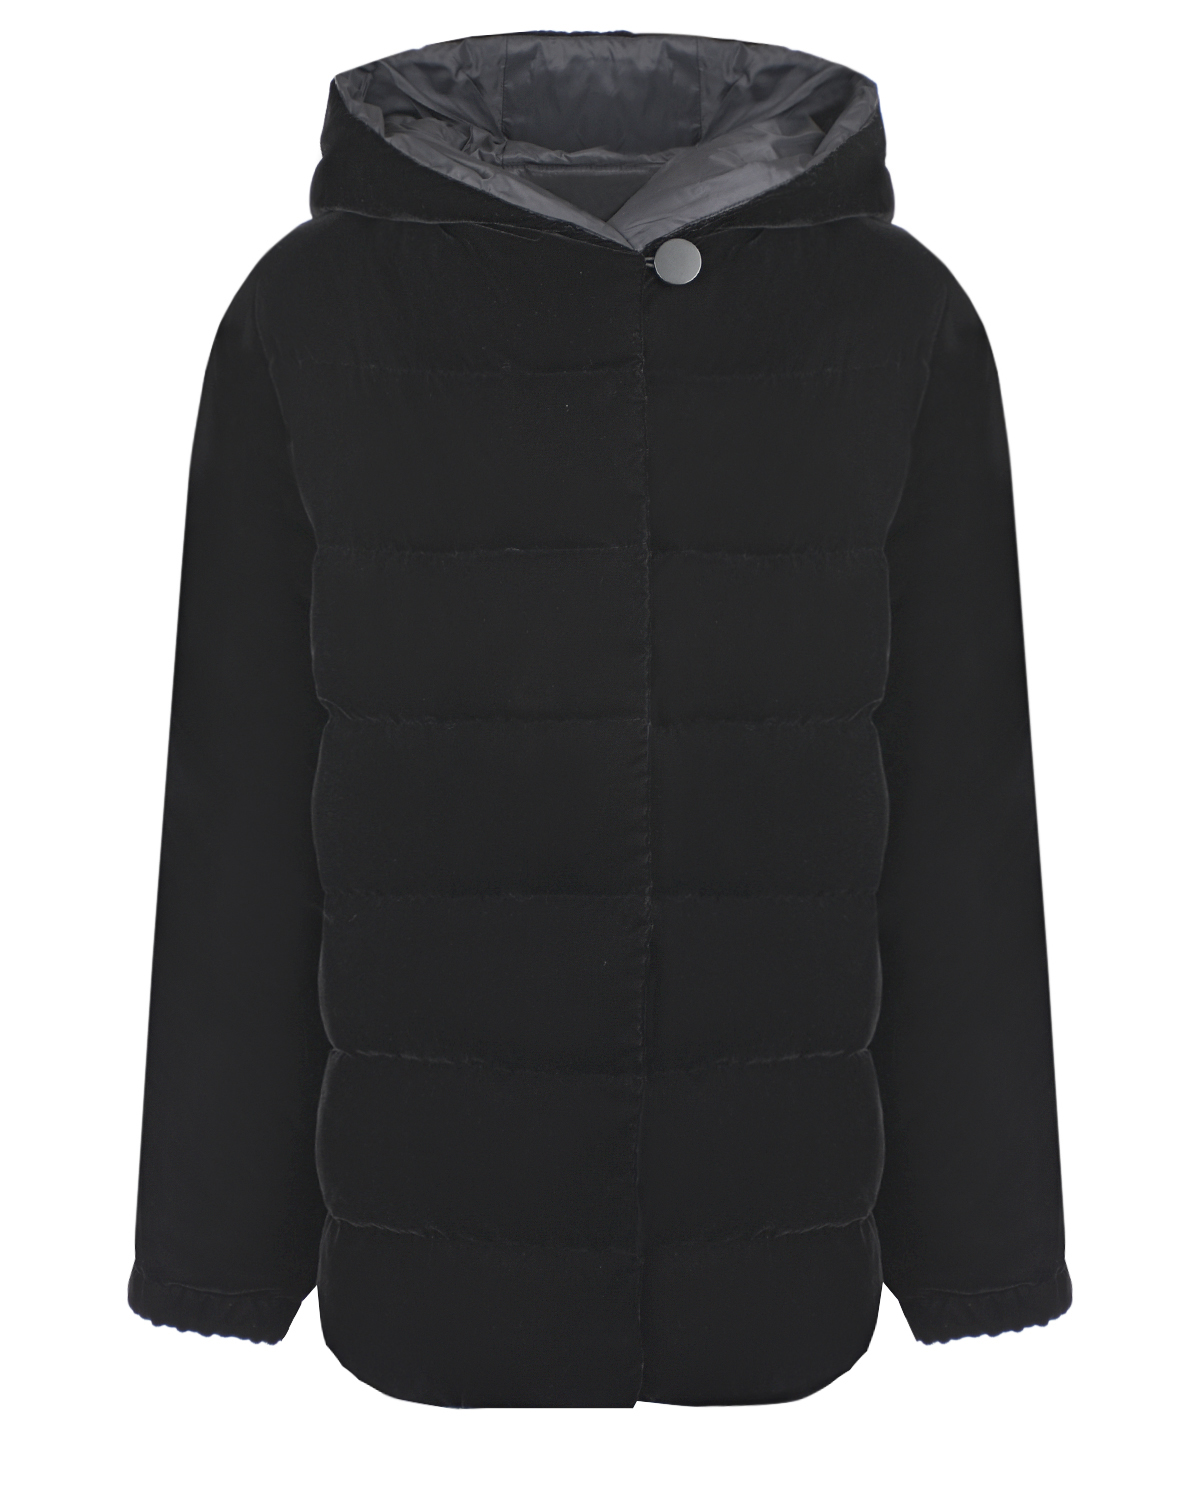 Бархатная куртка с застежкой на пуговицу Emporio Armani детская, размер 152, цвет черный - фото 1